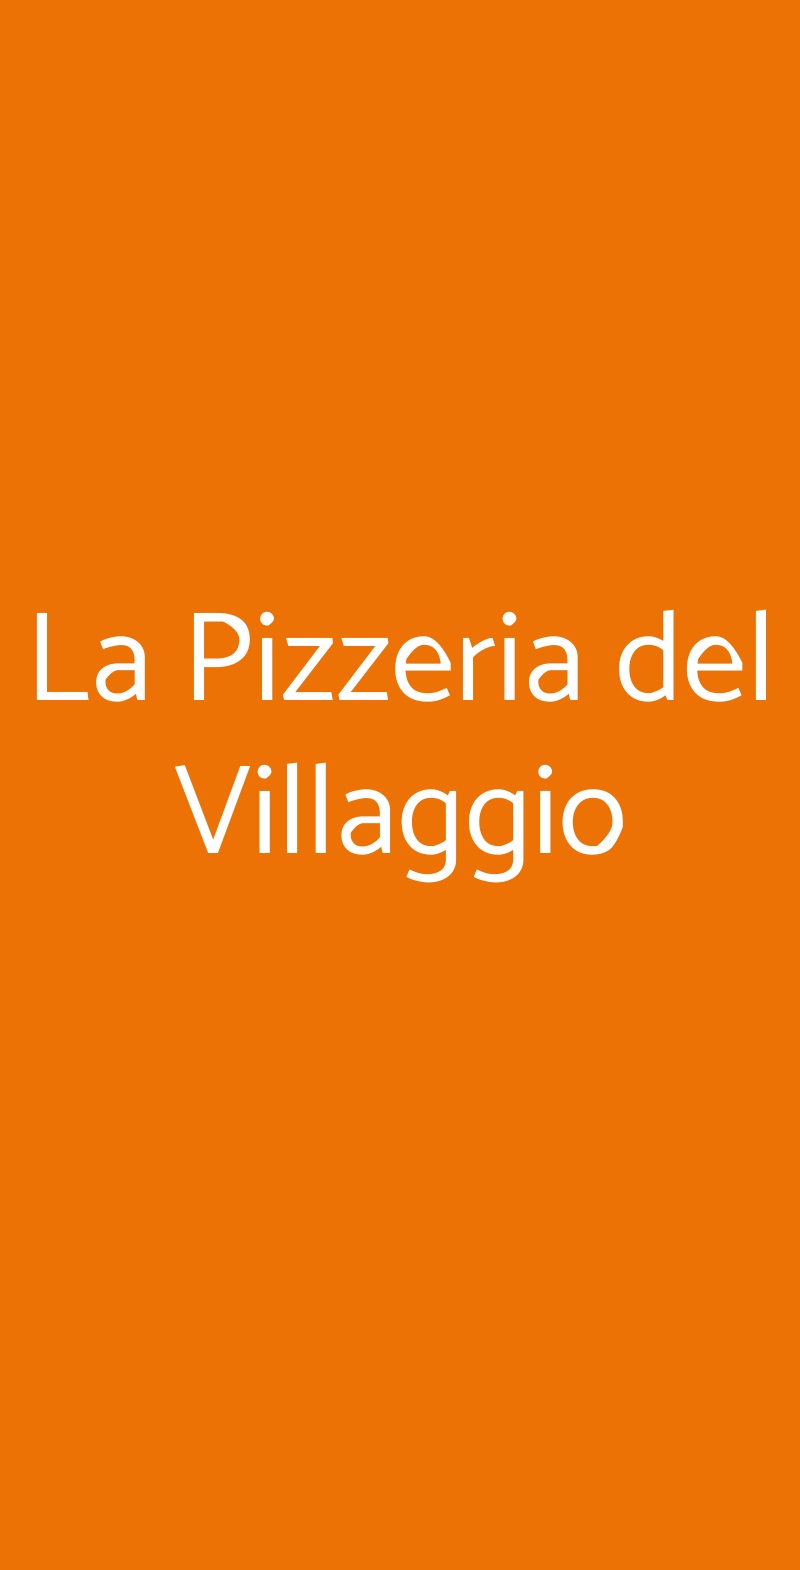 La Pizzeria del Villaggio Rimini menù 1 pagina